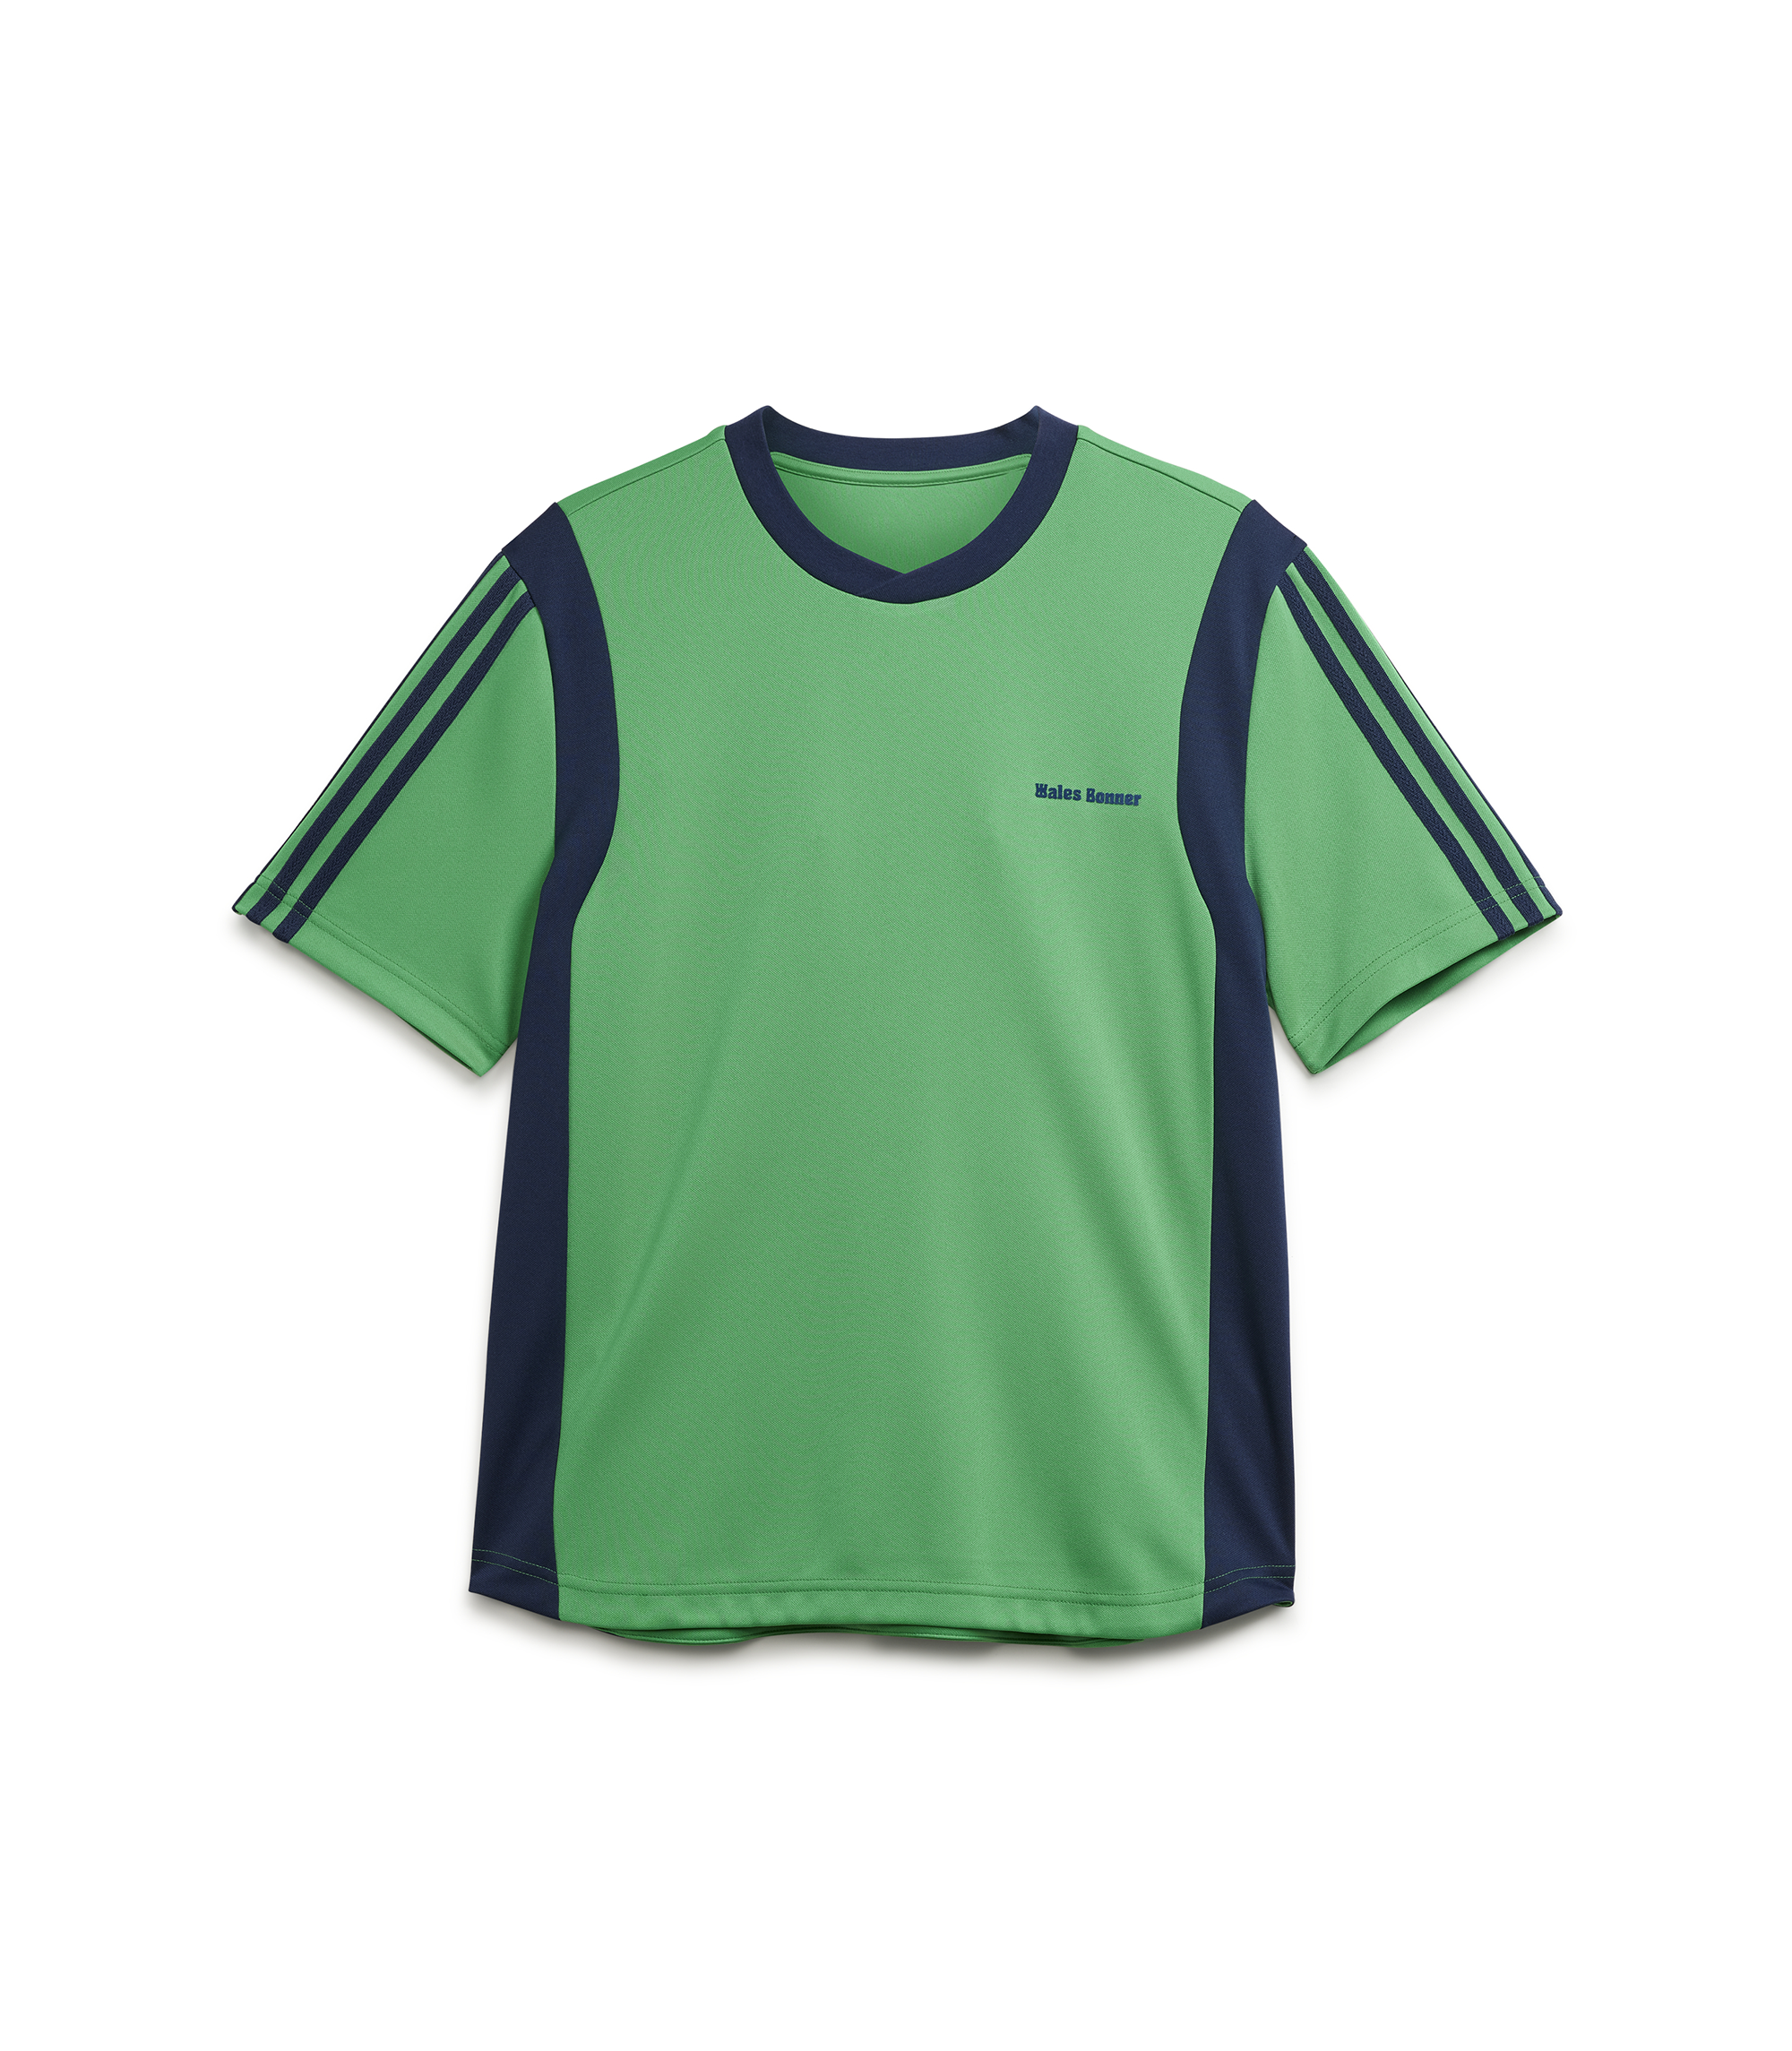 Wales Bonner Football Shirt - Vivid Green